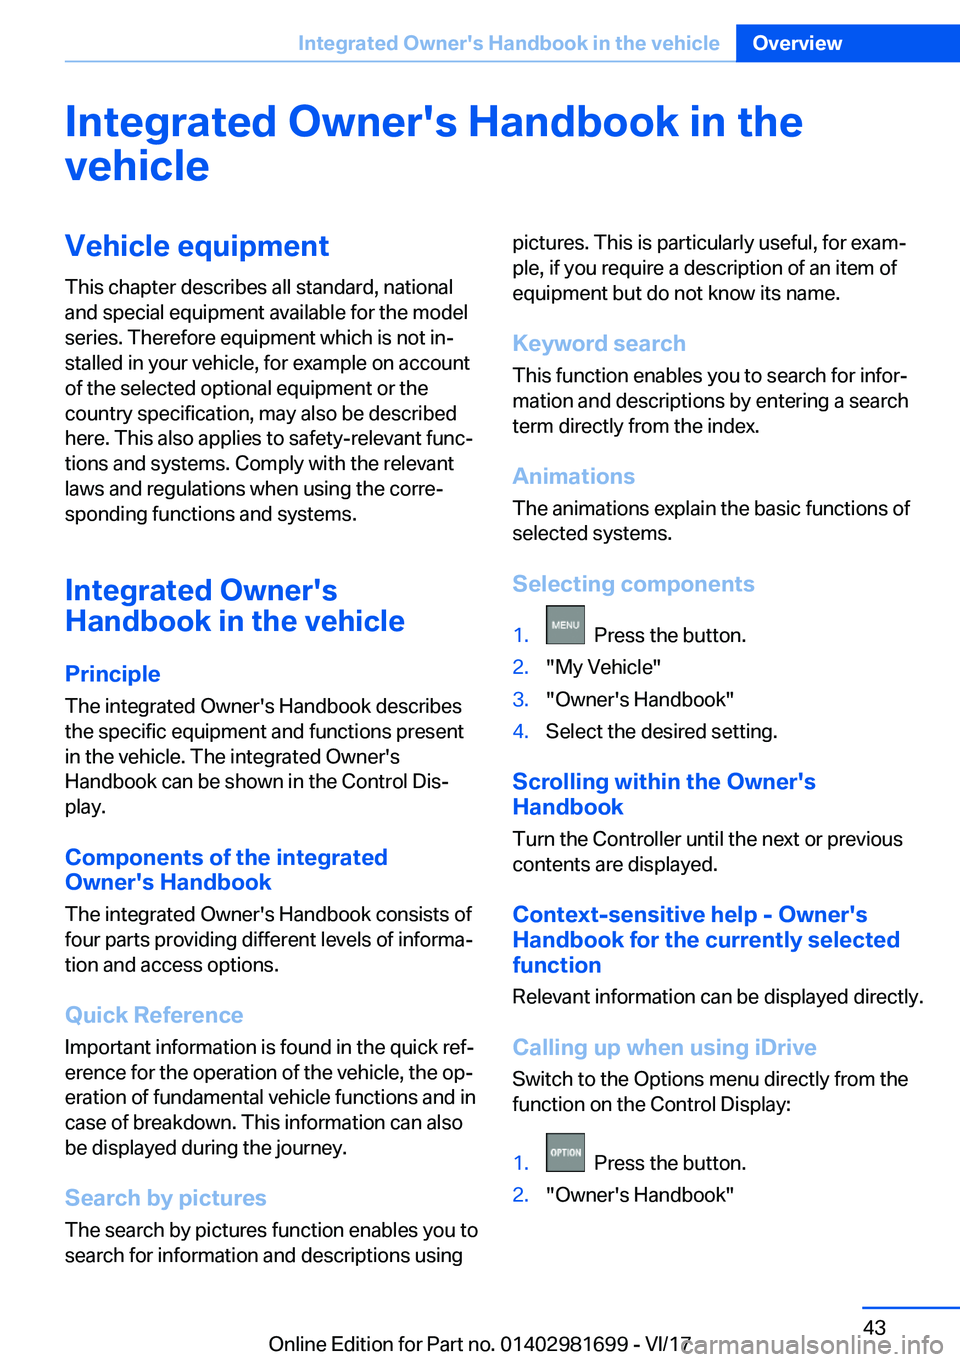 BMW M4 2018 Service Manual �I�n�t�e�g�r�a�t�e�d��O�w�n�e�r��s��H�a�n�d�b�o�o�k��i�n��t�h�e
�v�e�h�i�c�l�e�V�e�h�i�c�l�e��e�q�u�i�p�m�e�n�t
�T�h�i�s� �c�h�a�p�t�e�r� �d�e�s�c�r�i�b�e�s� �a�l�l� �s�t�a�n�d�a�r�d�,� �n�a�t�i